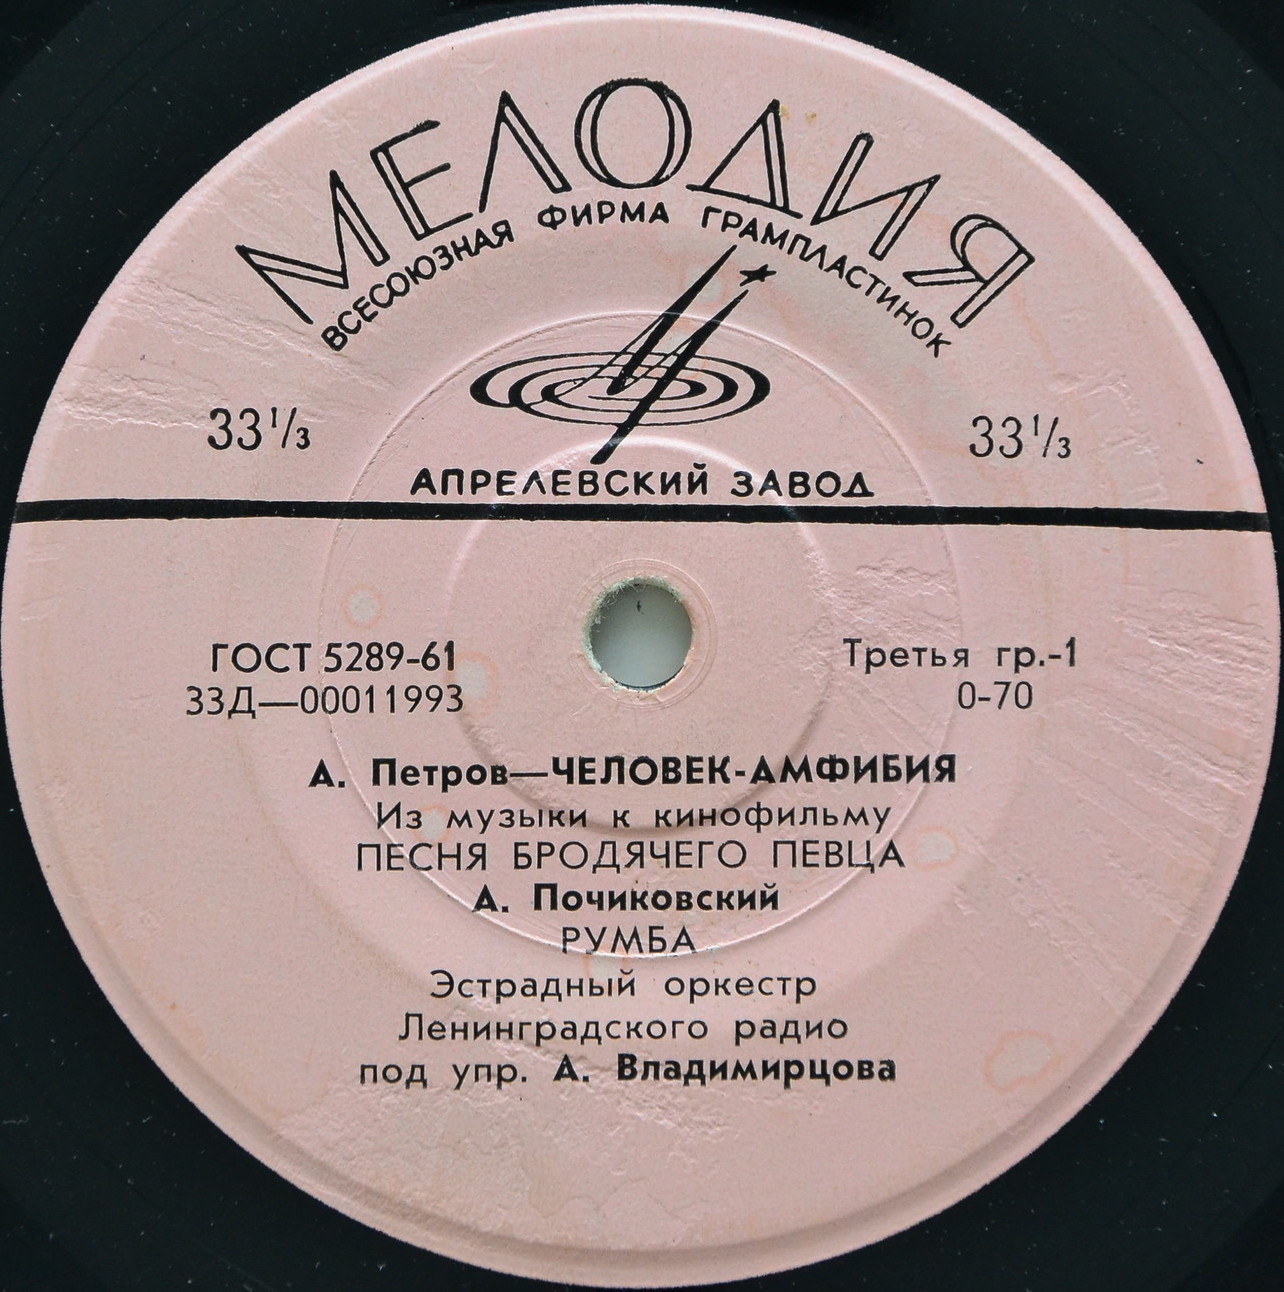 А. ПЕТРОВ (1930—2006) - Из музыки к к/ф «Человек-амфибия»